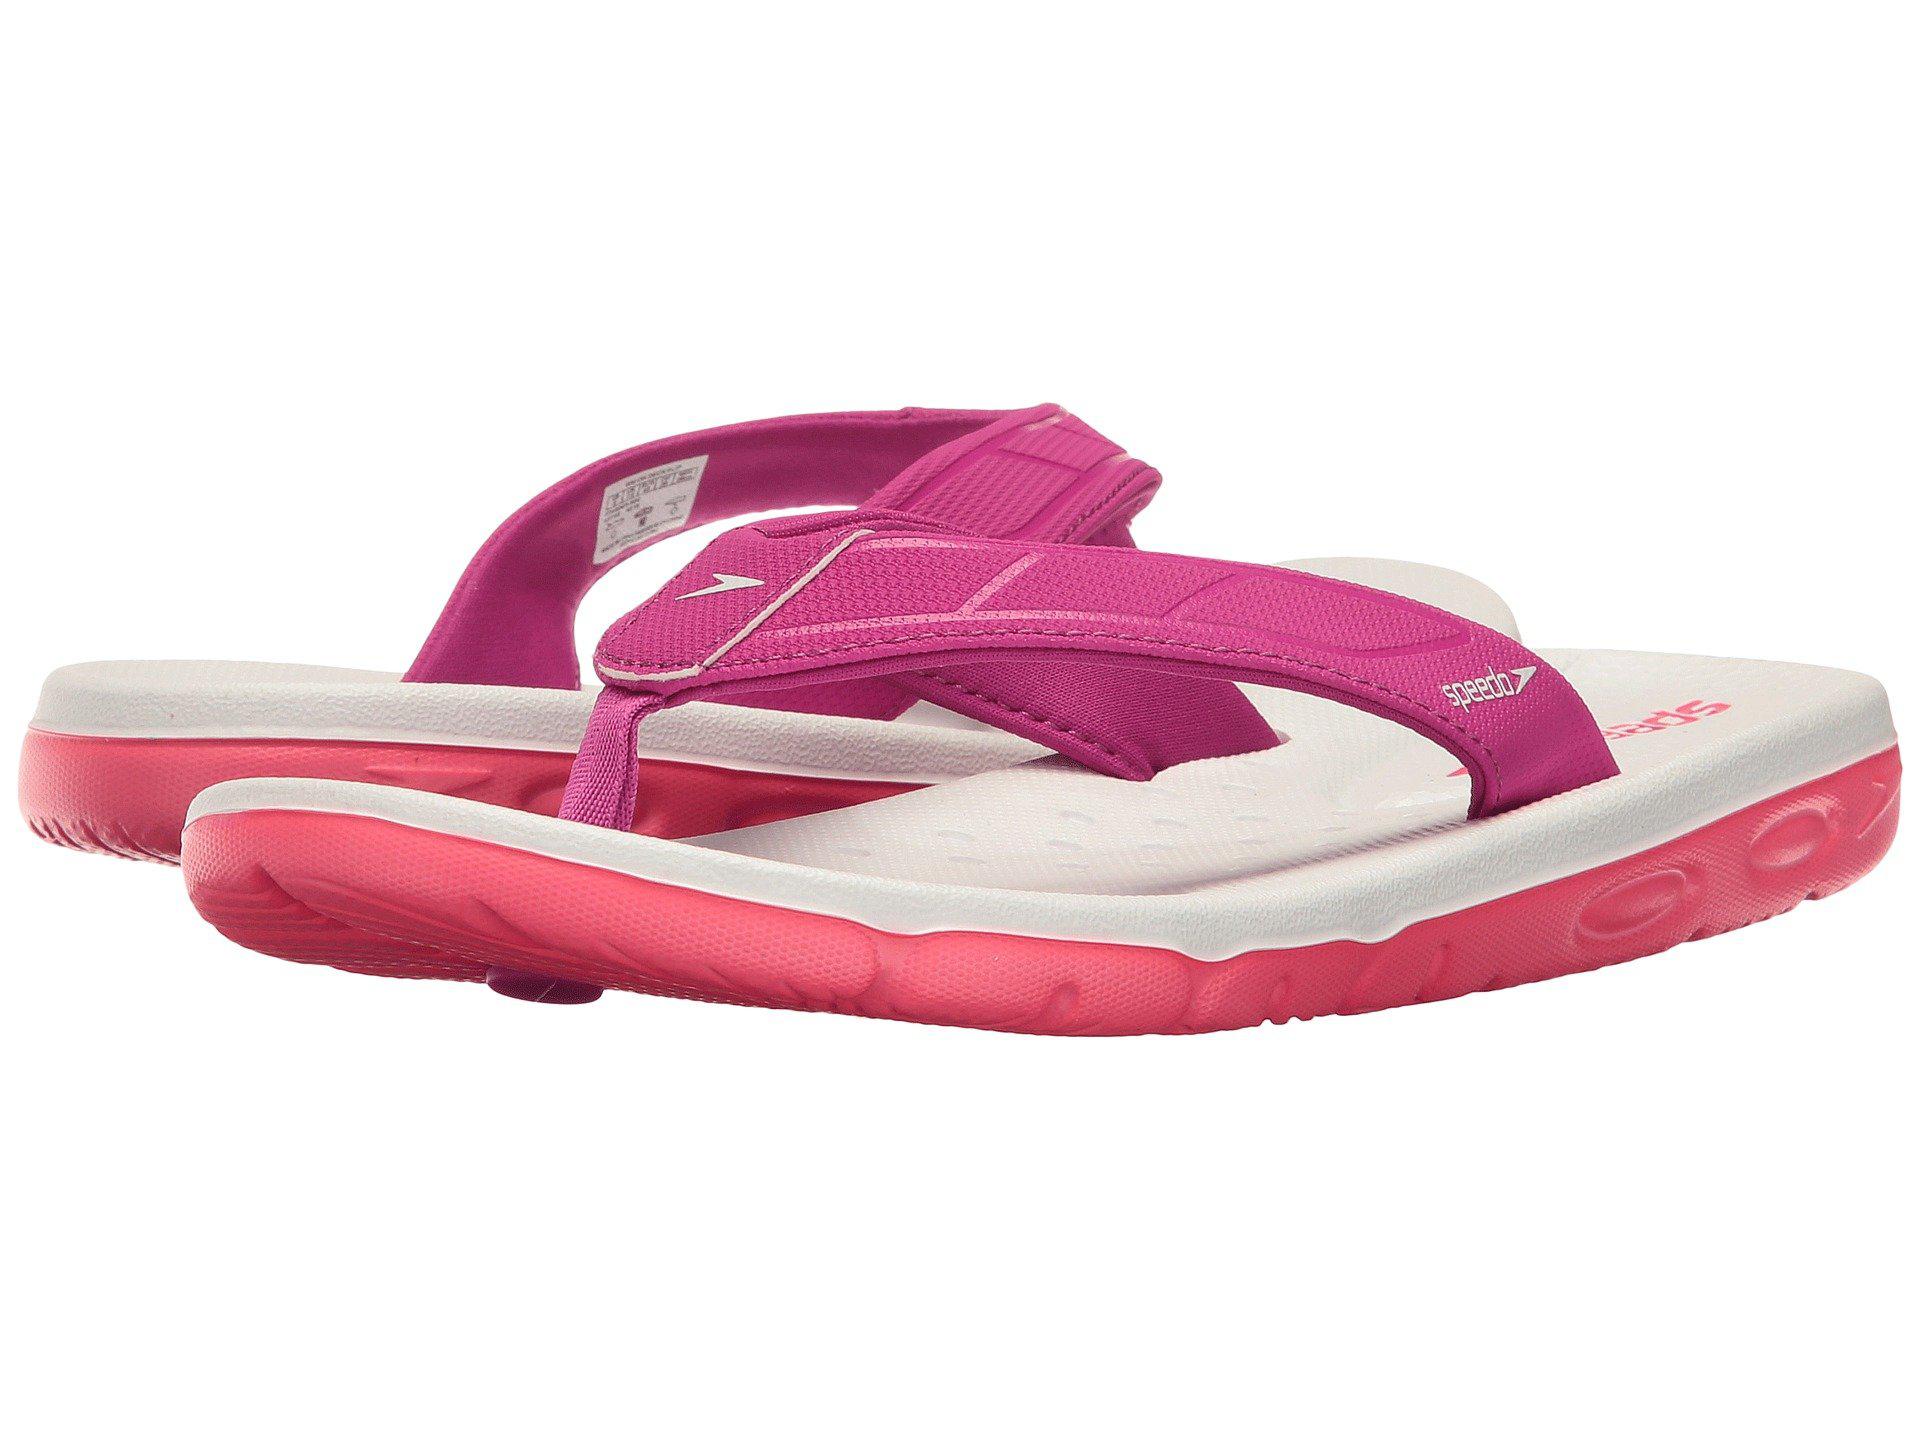 Speedo Synthetic On Deck Flip Sandal in Pink - Lyst